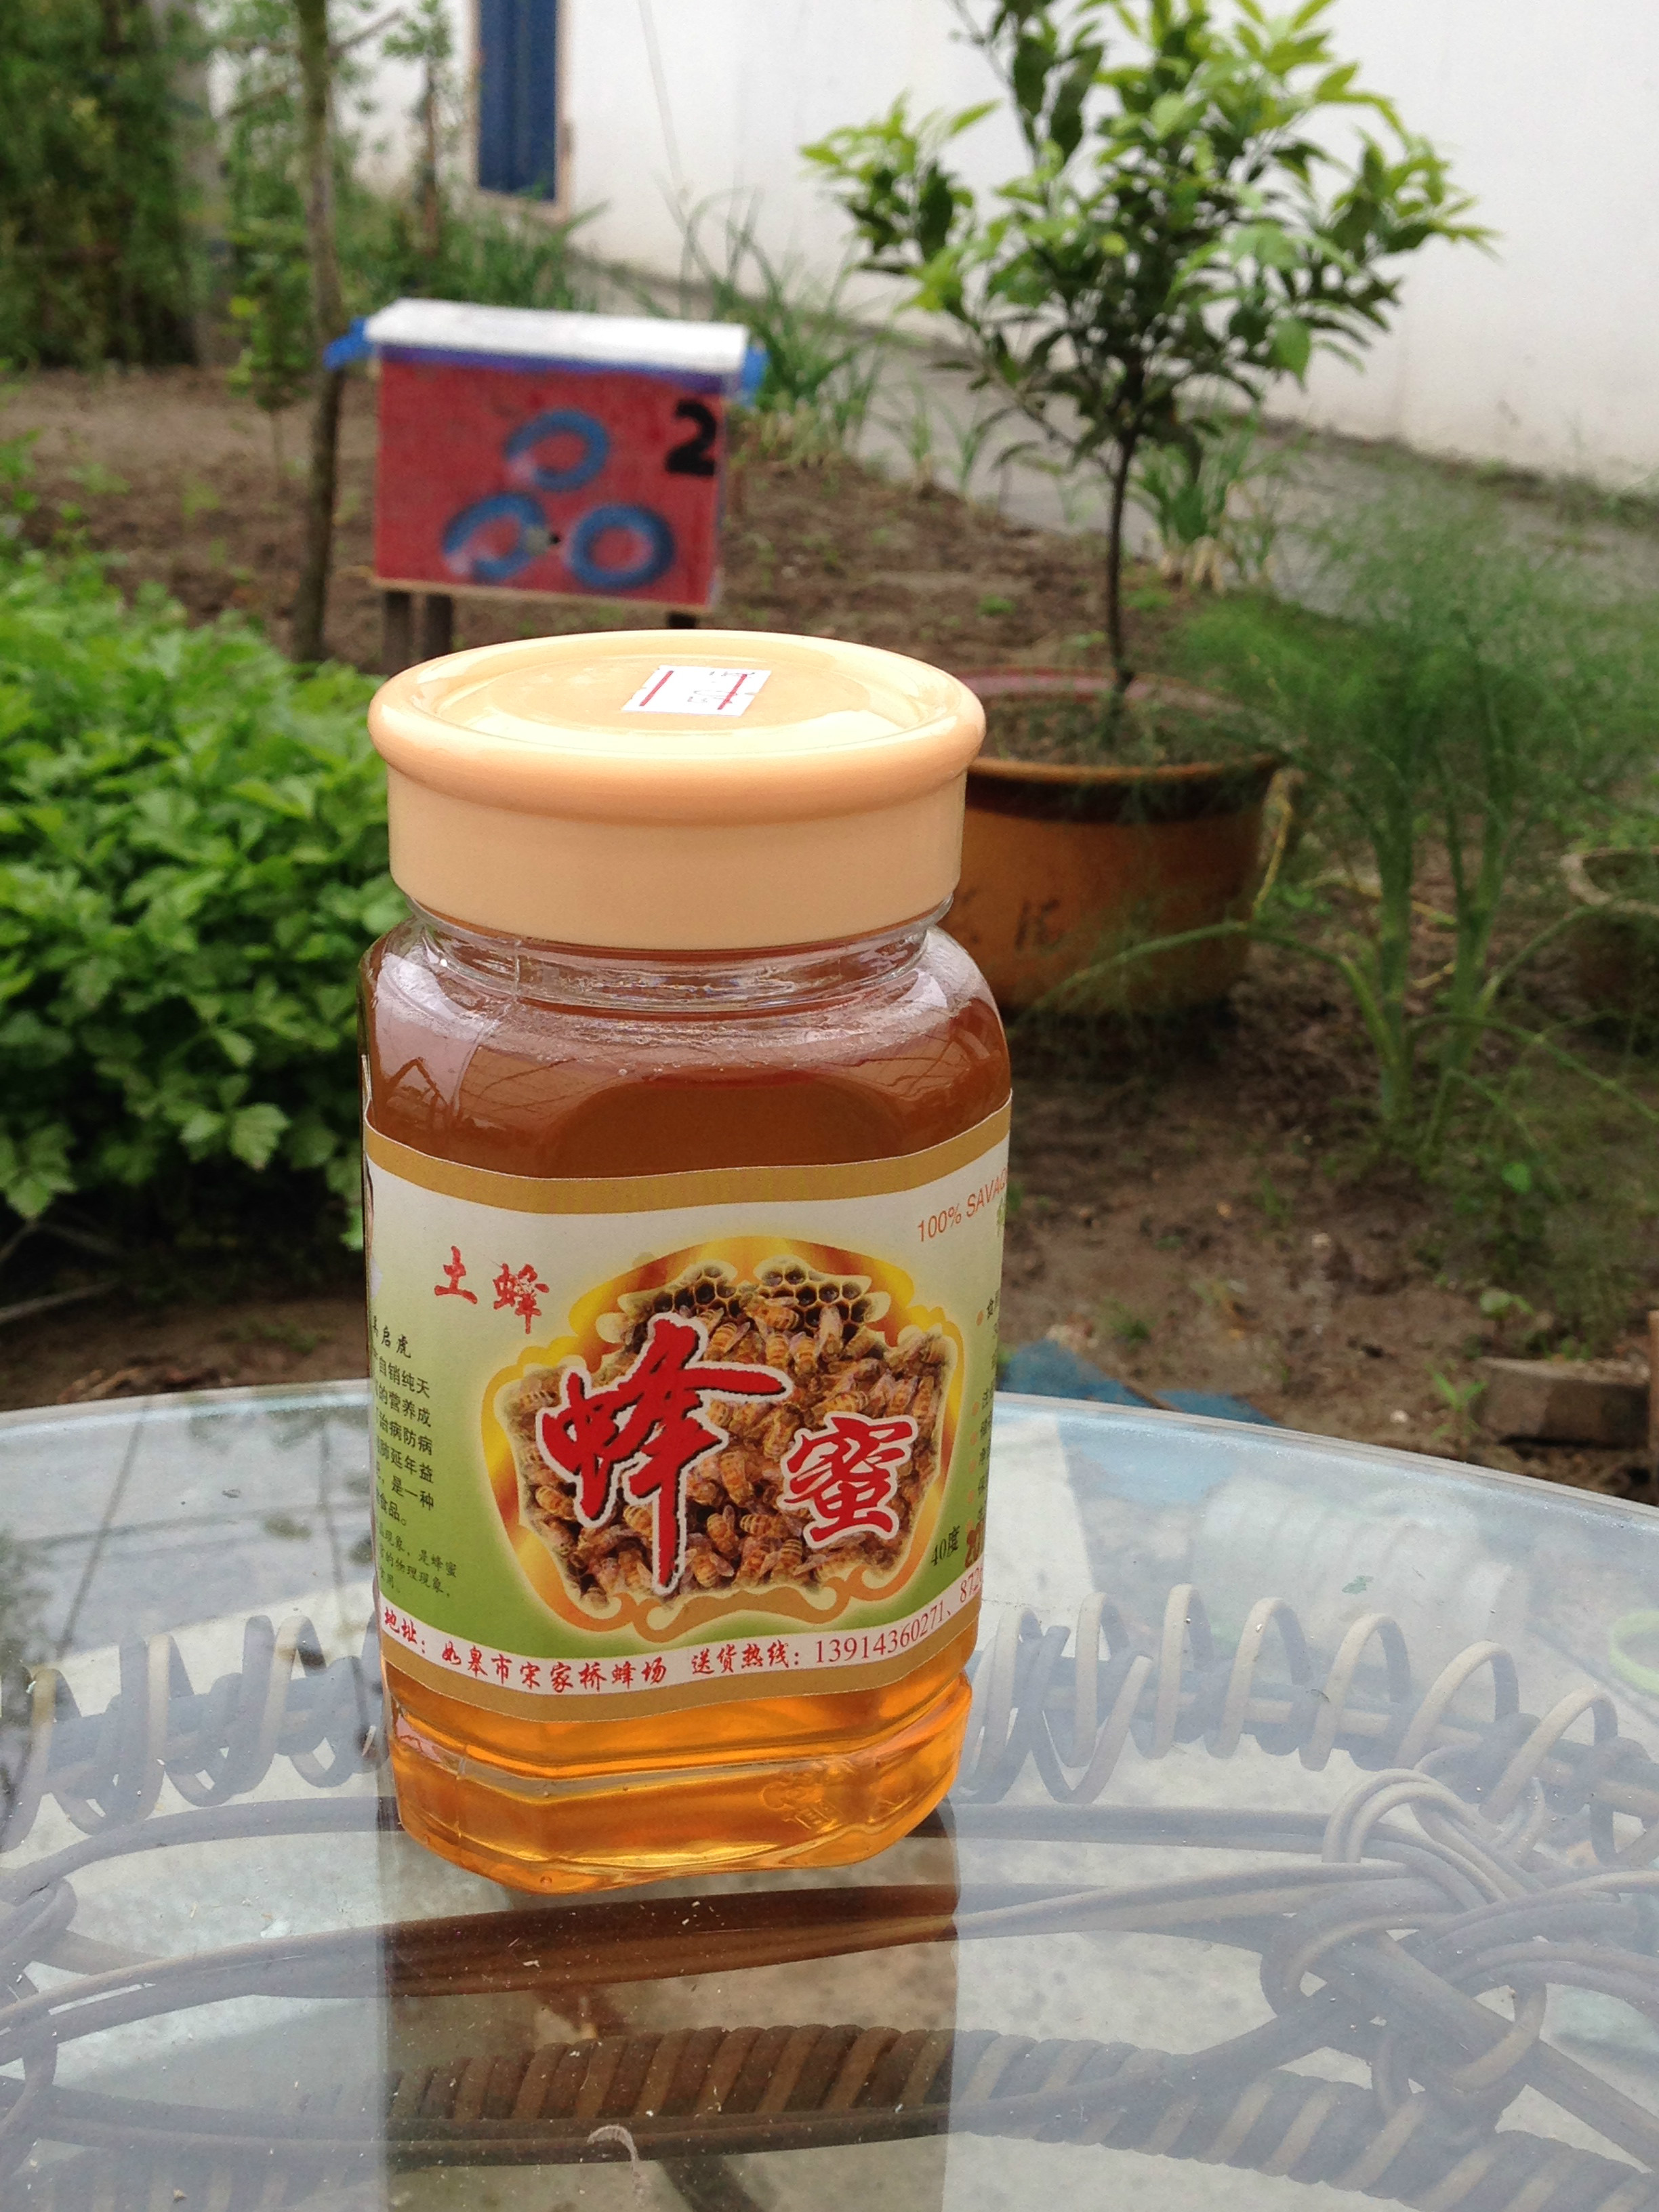 淘宝上哪家蜂蜜是真的_淘宝上土蜂蜜是真的吗_怎么把我的蜂蜜放土淘宝上买